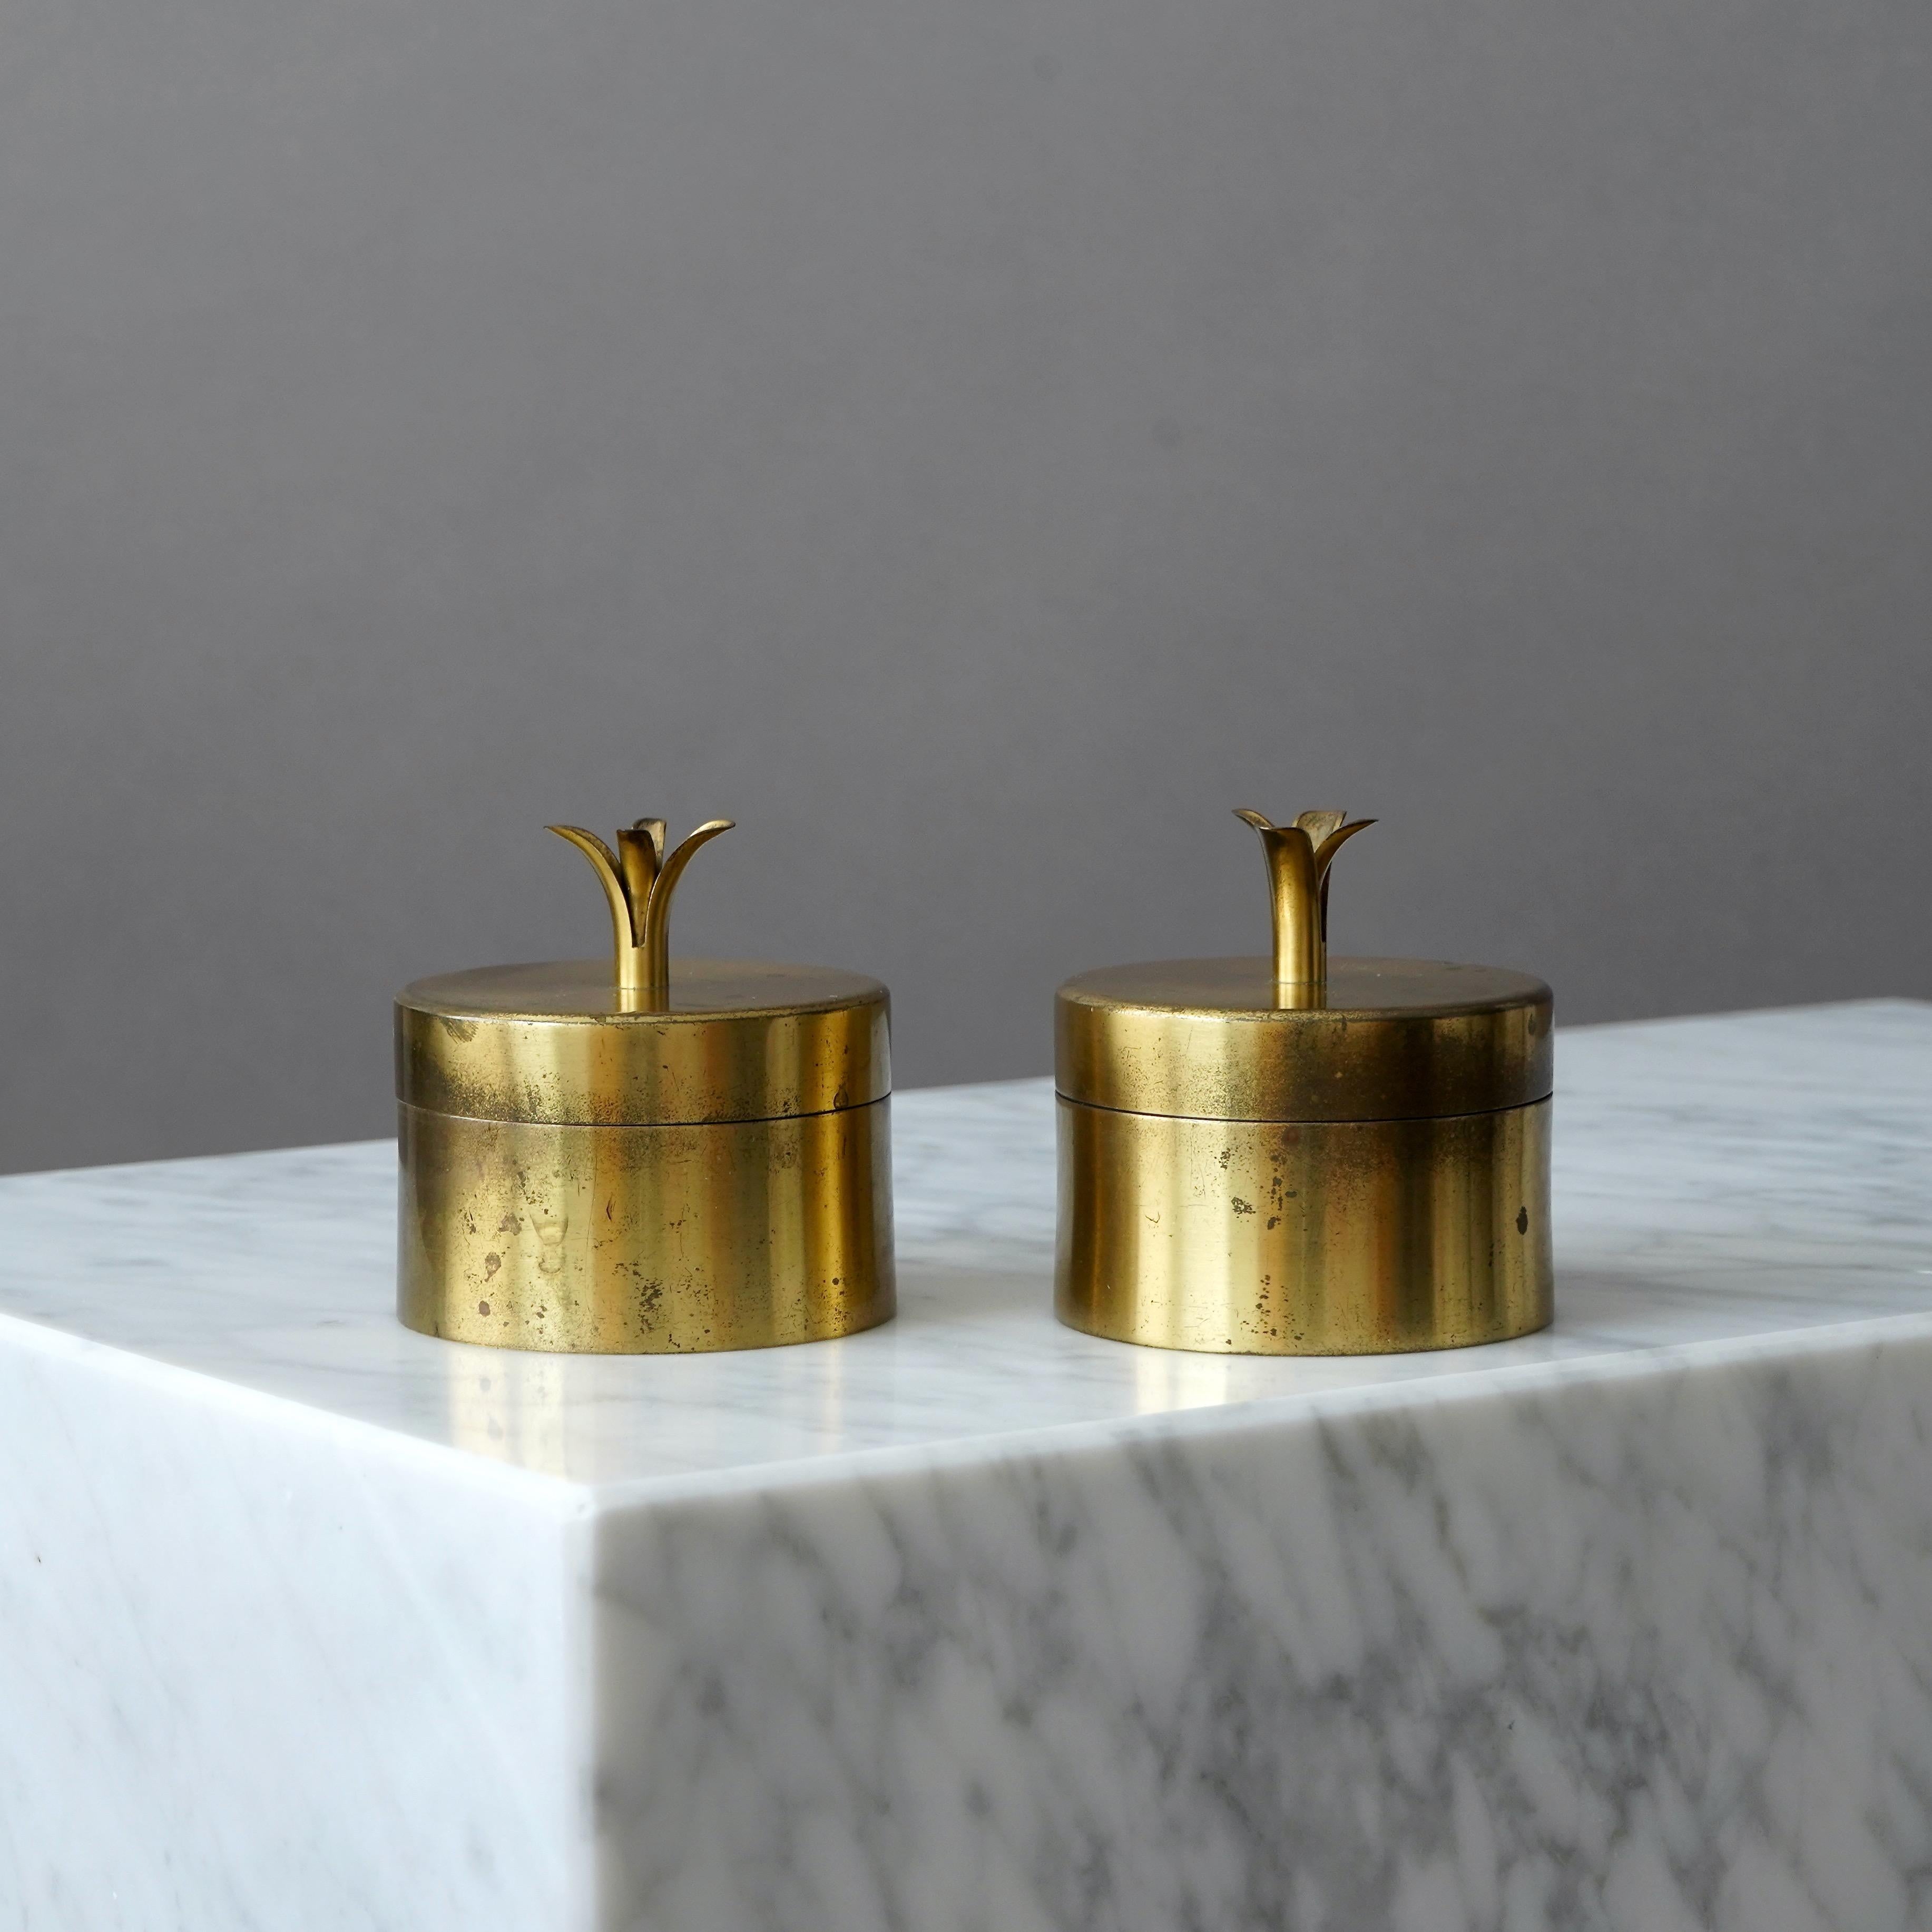 Pair of Brass Lidded Boxes by Ivar Ålenius Björk for Ystad Metall, Sweden, 1930s For Sale 6